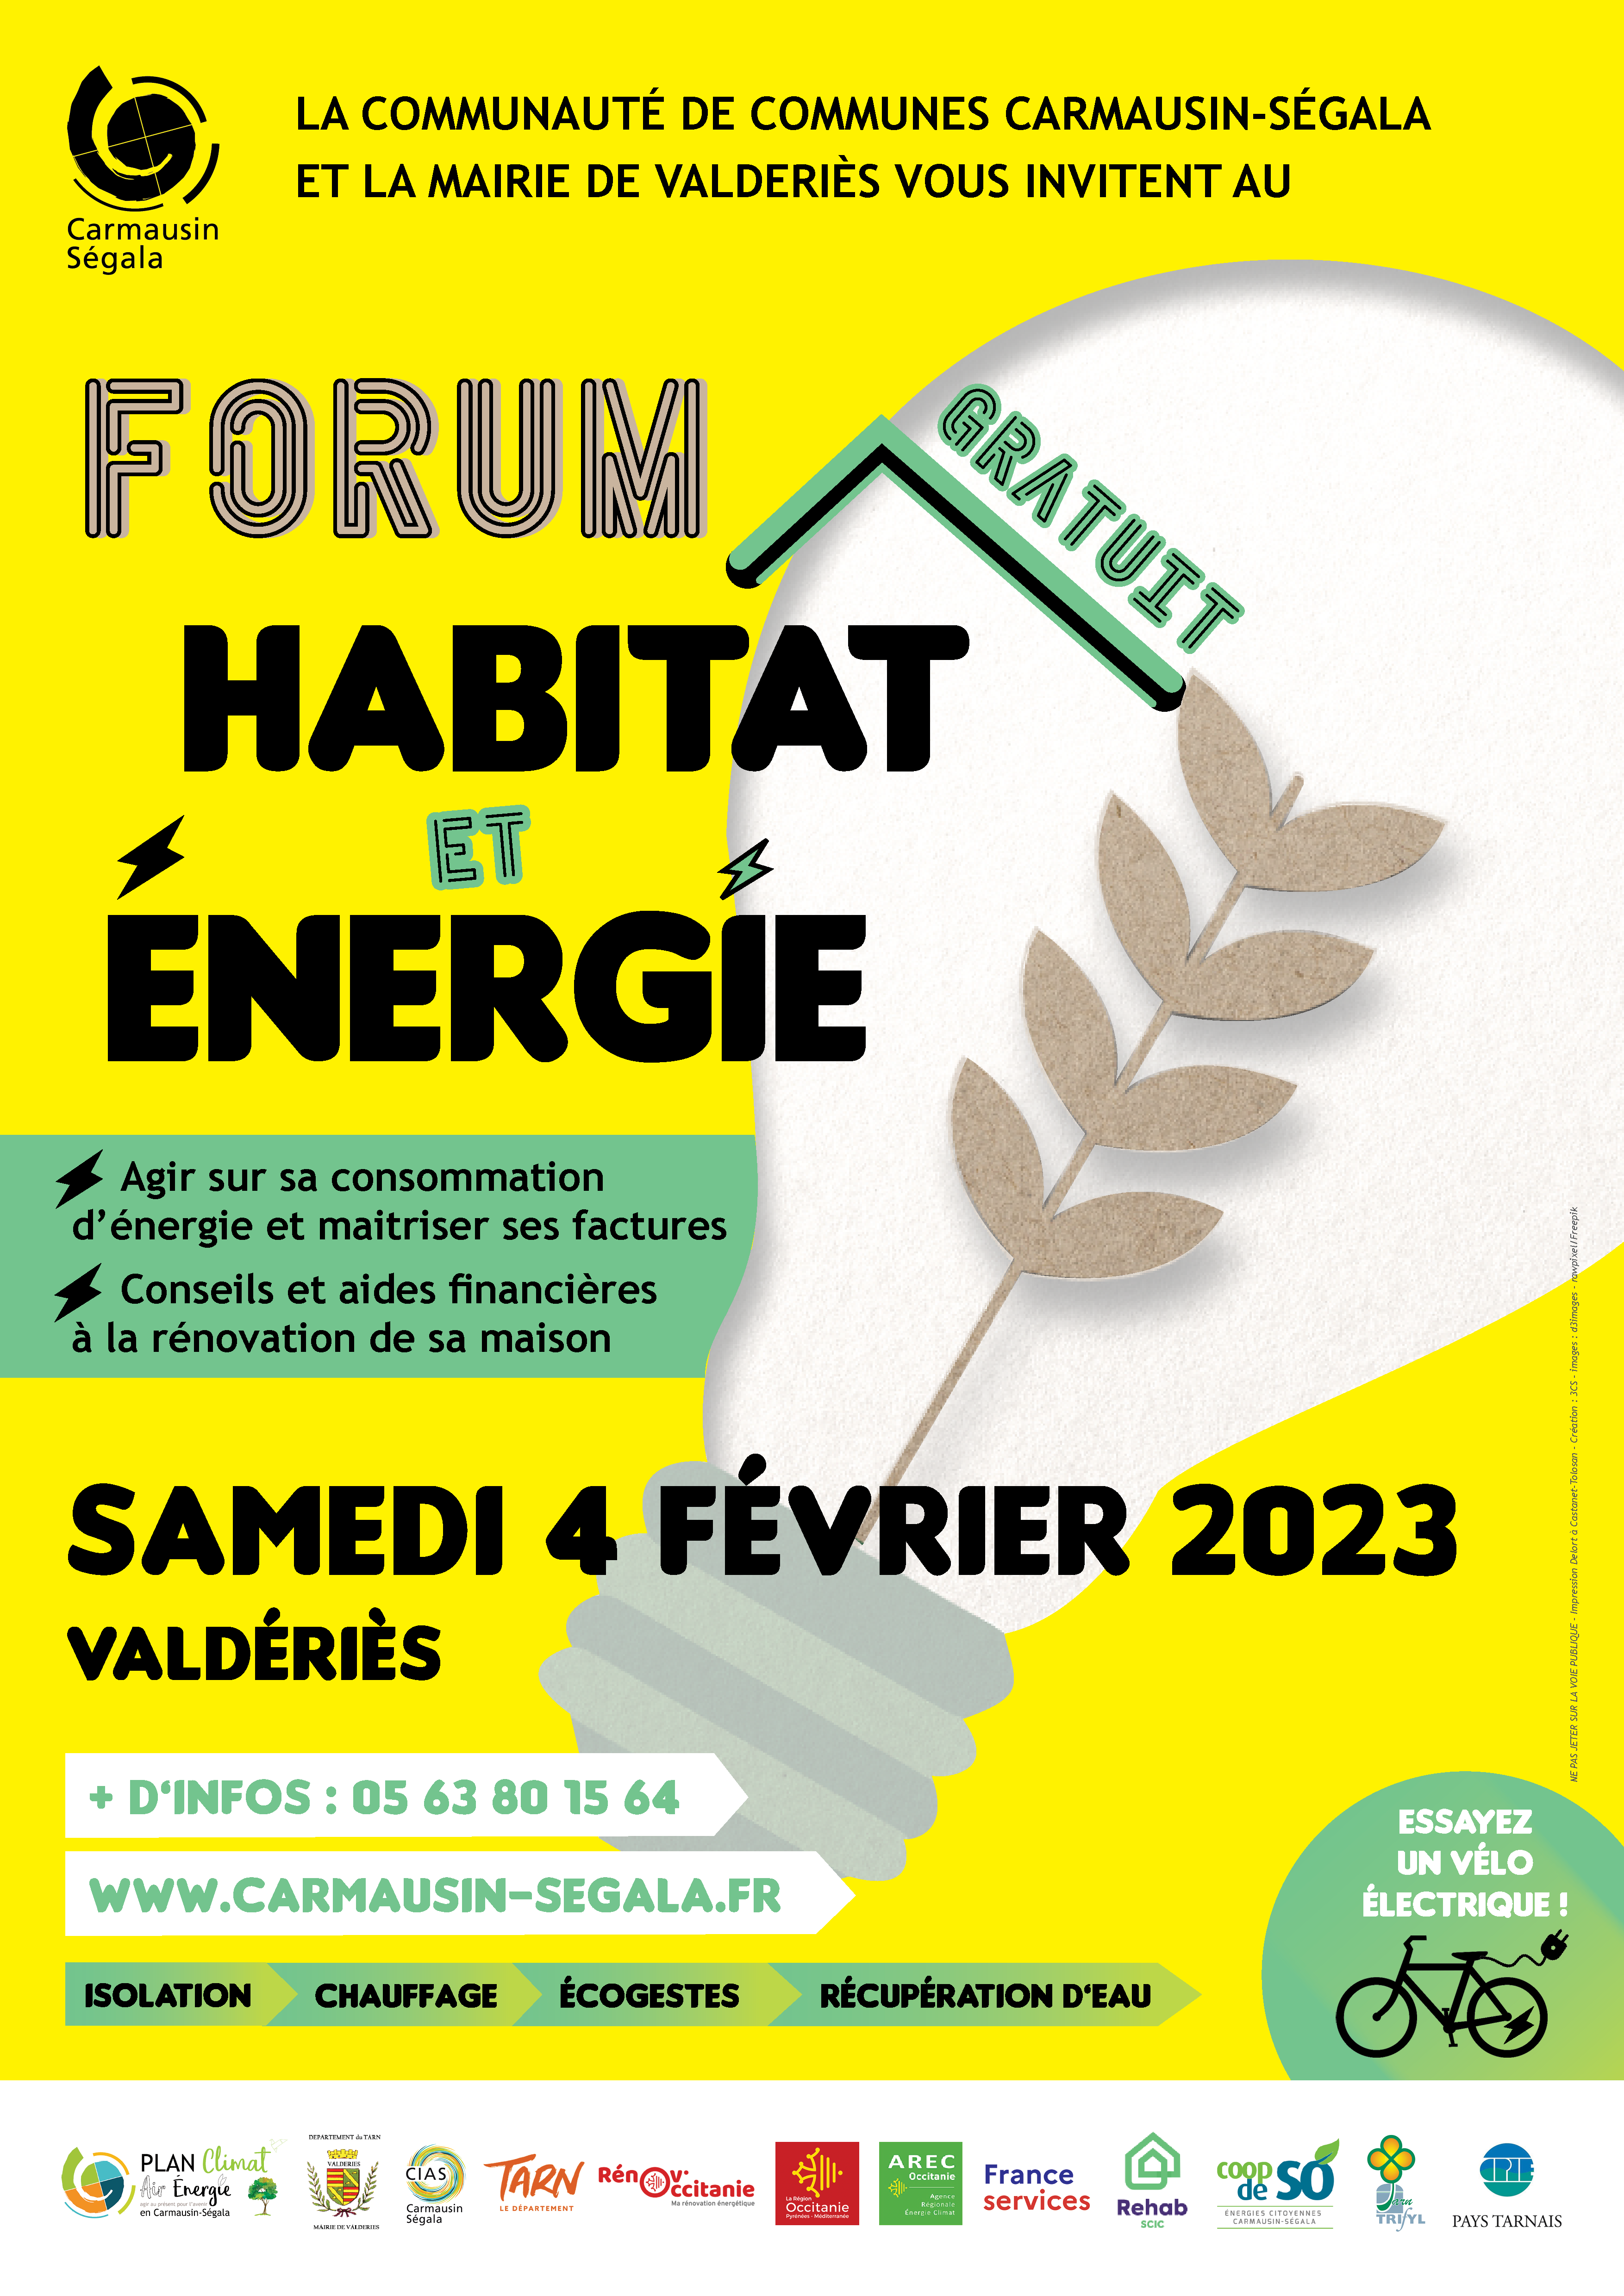 Forum Habitat et Energie : les jeunes invitent les ainés. 